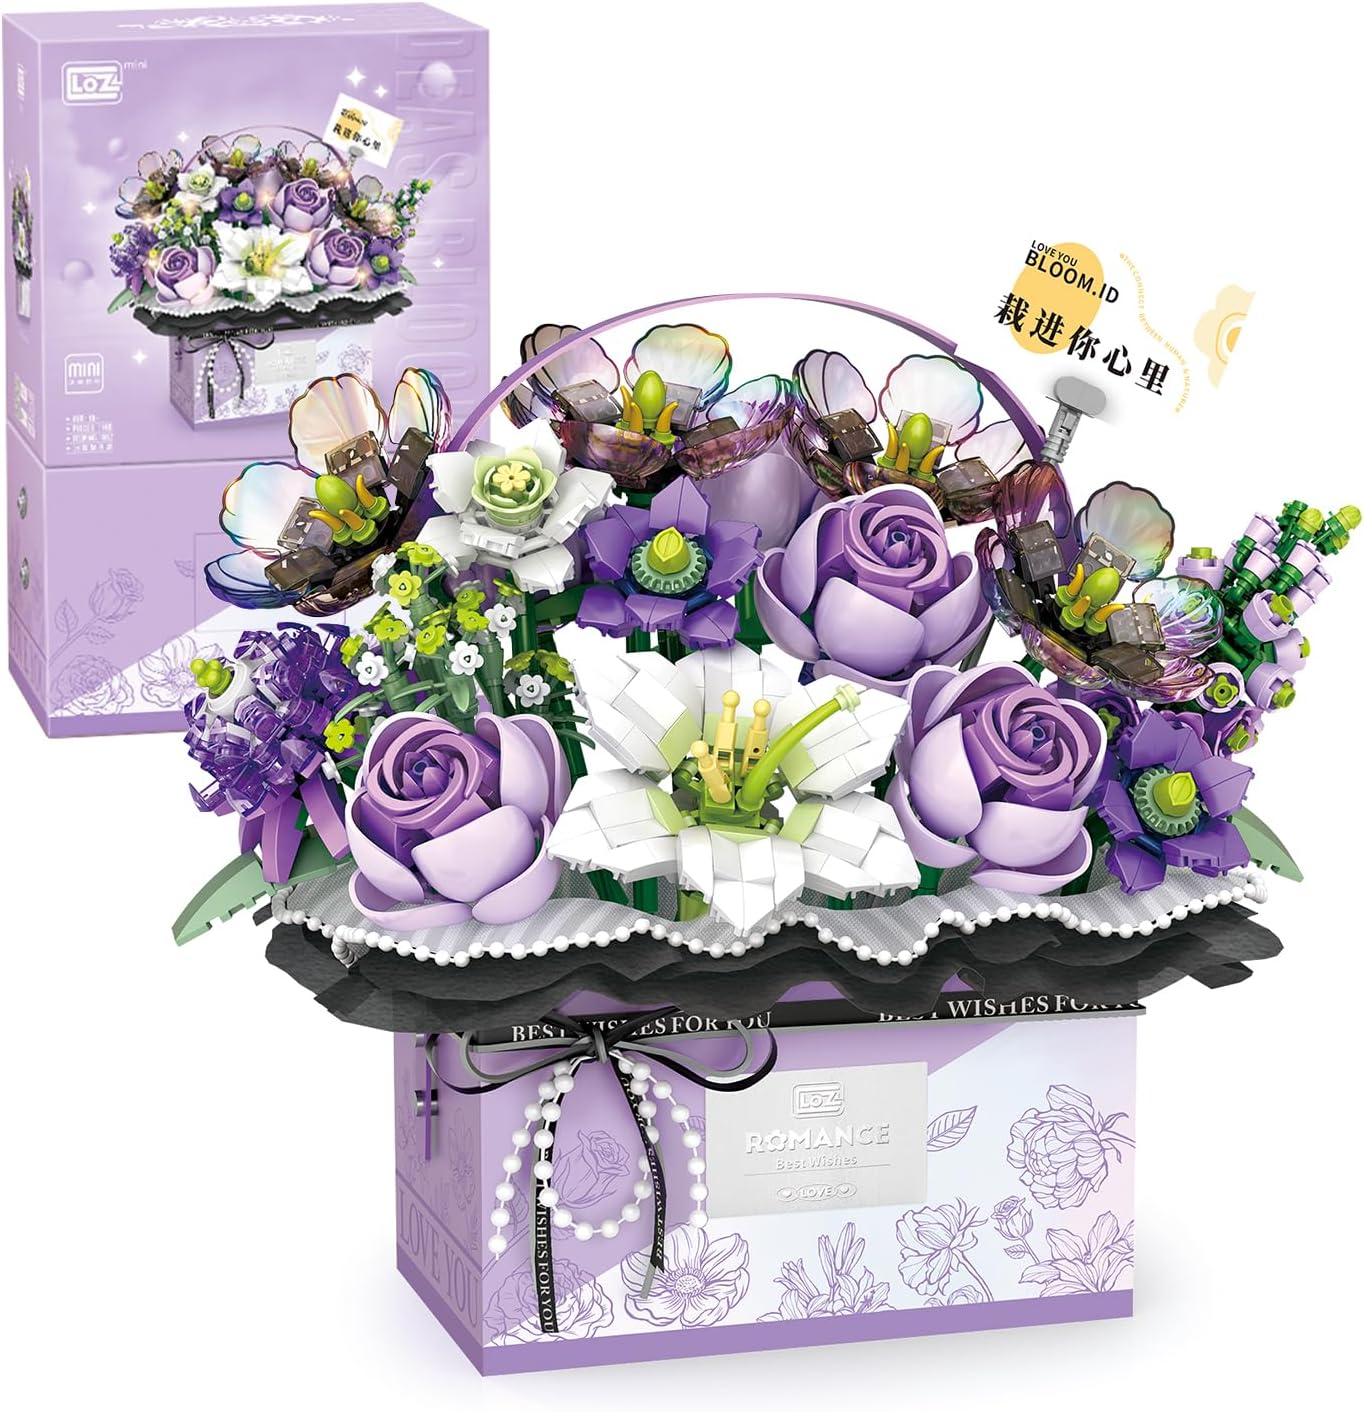 Конструктор с подсветкой LOZ Mini Block Eternal Flower Romance, фиолетовый, 1179 деталей коробка подарочная